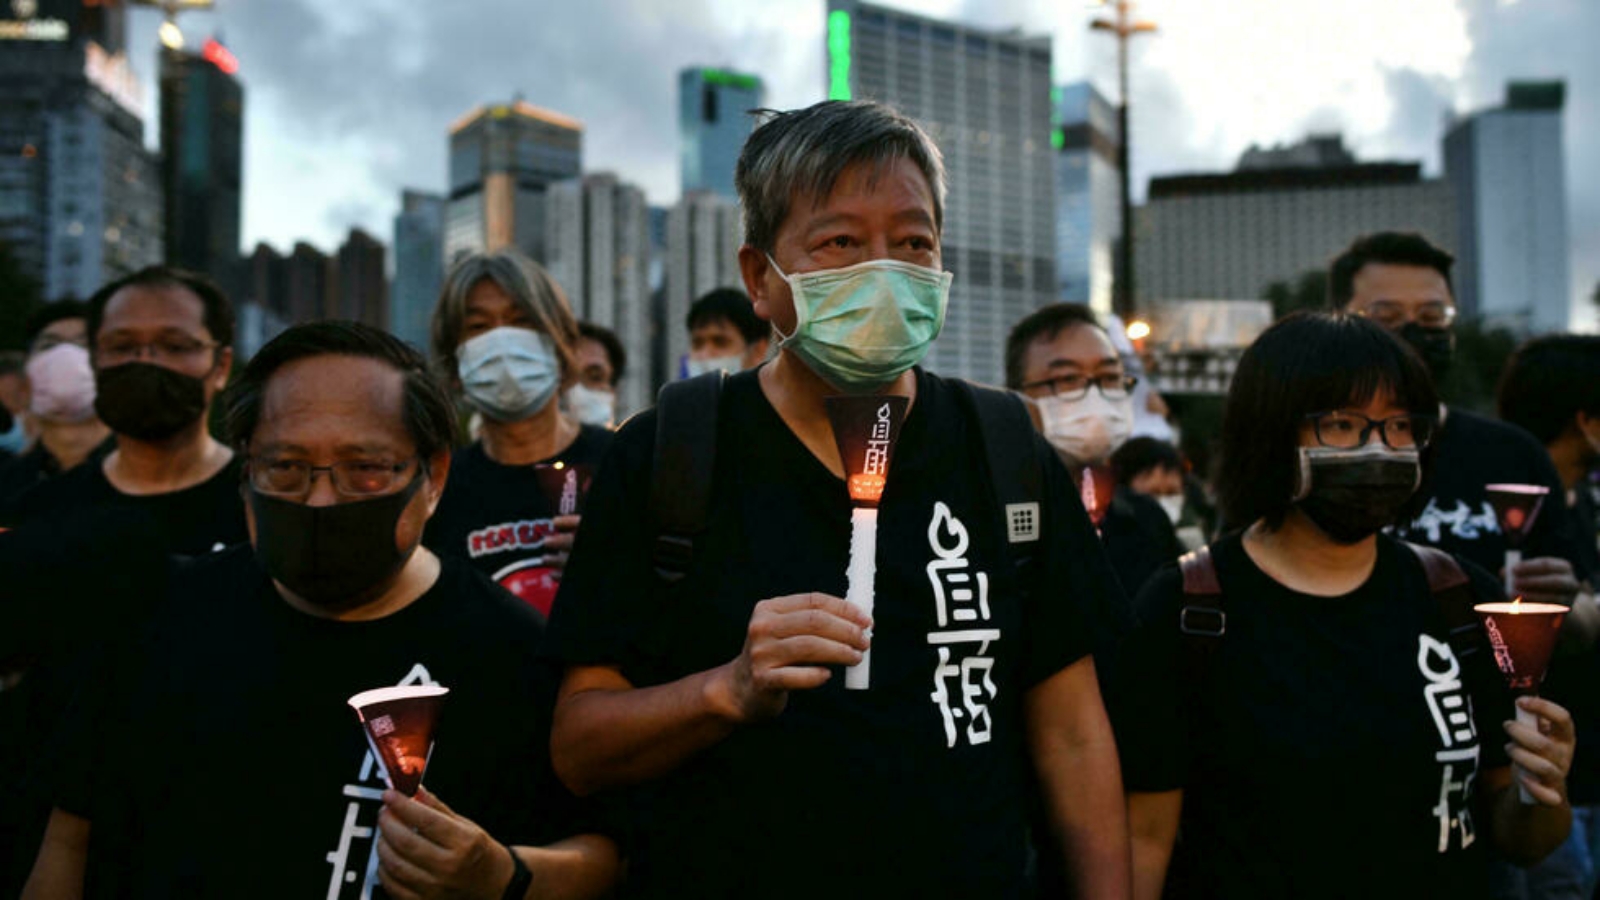 مناصرو تحالف هونغ كونغ ينظمون وقفة احتجاجية على ضوء الشموع في حديقة فيكتوريا في هونغ كونغ لإحياء ذكرى قمع بكين في ميدان تيانانمين، في 4 حزيران/ يونيو من كل عام.